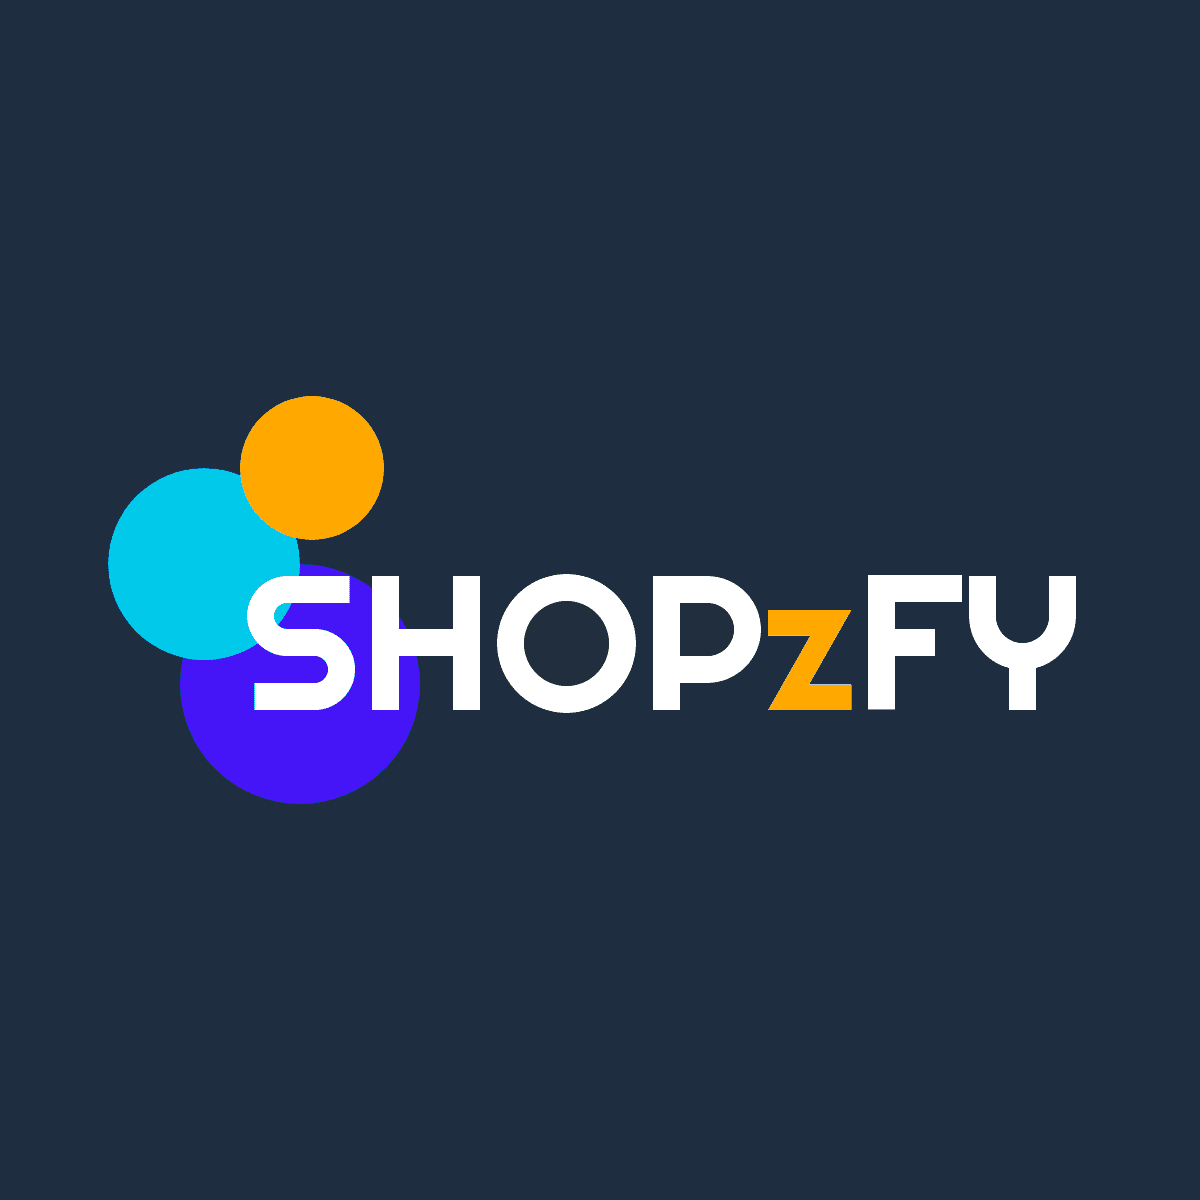 Shopzfy.com